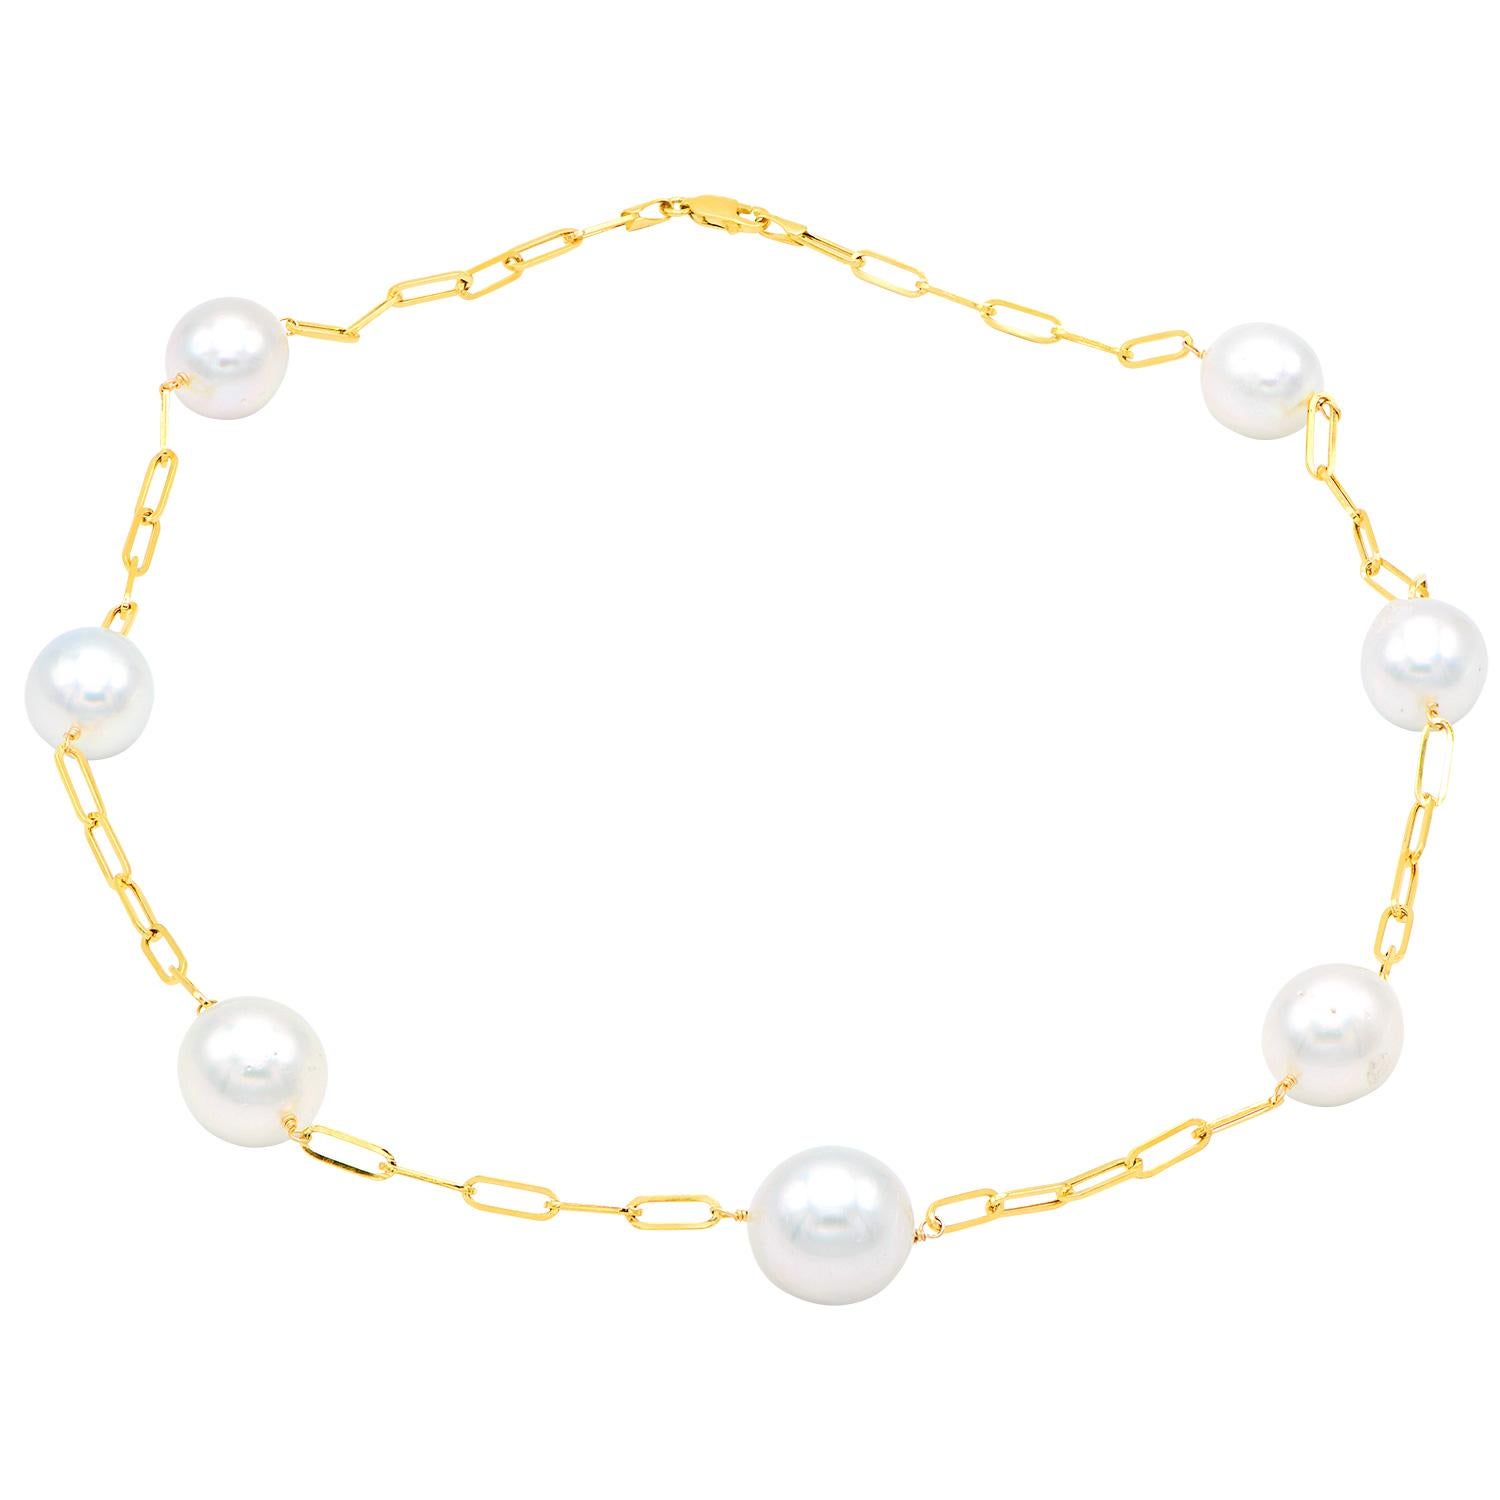 Diese wunderschöne Halskette besteht aus 14 Karat Gelbgold-Büroklammer-Gliedern mit 7 weißen Südseeperlen von 12-15 mm Durchmesser. Die Kette ist insgesamt 18 Zoll lang und hat Perlen der Qualität AA+. 